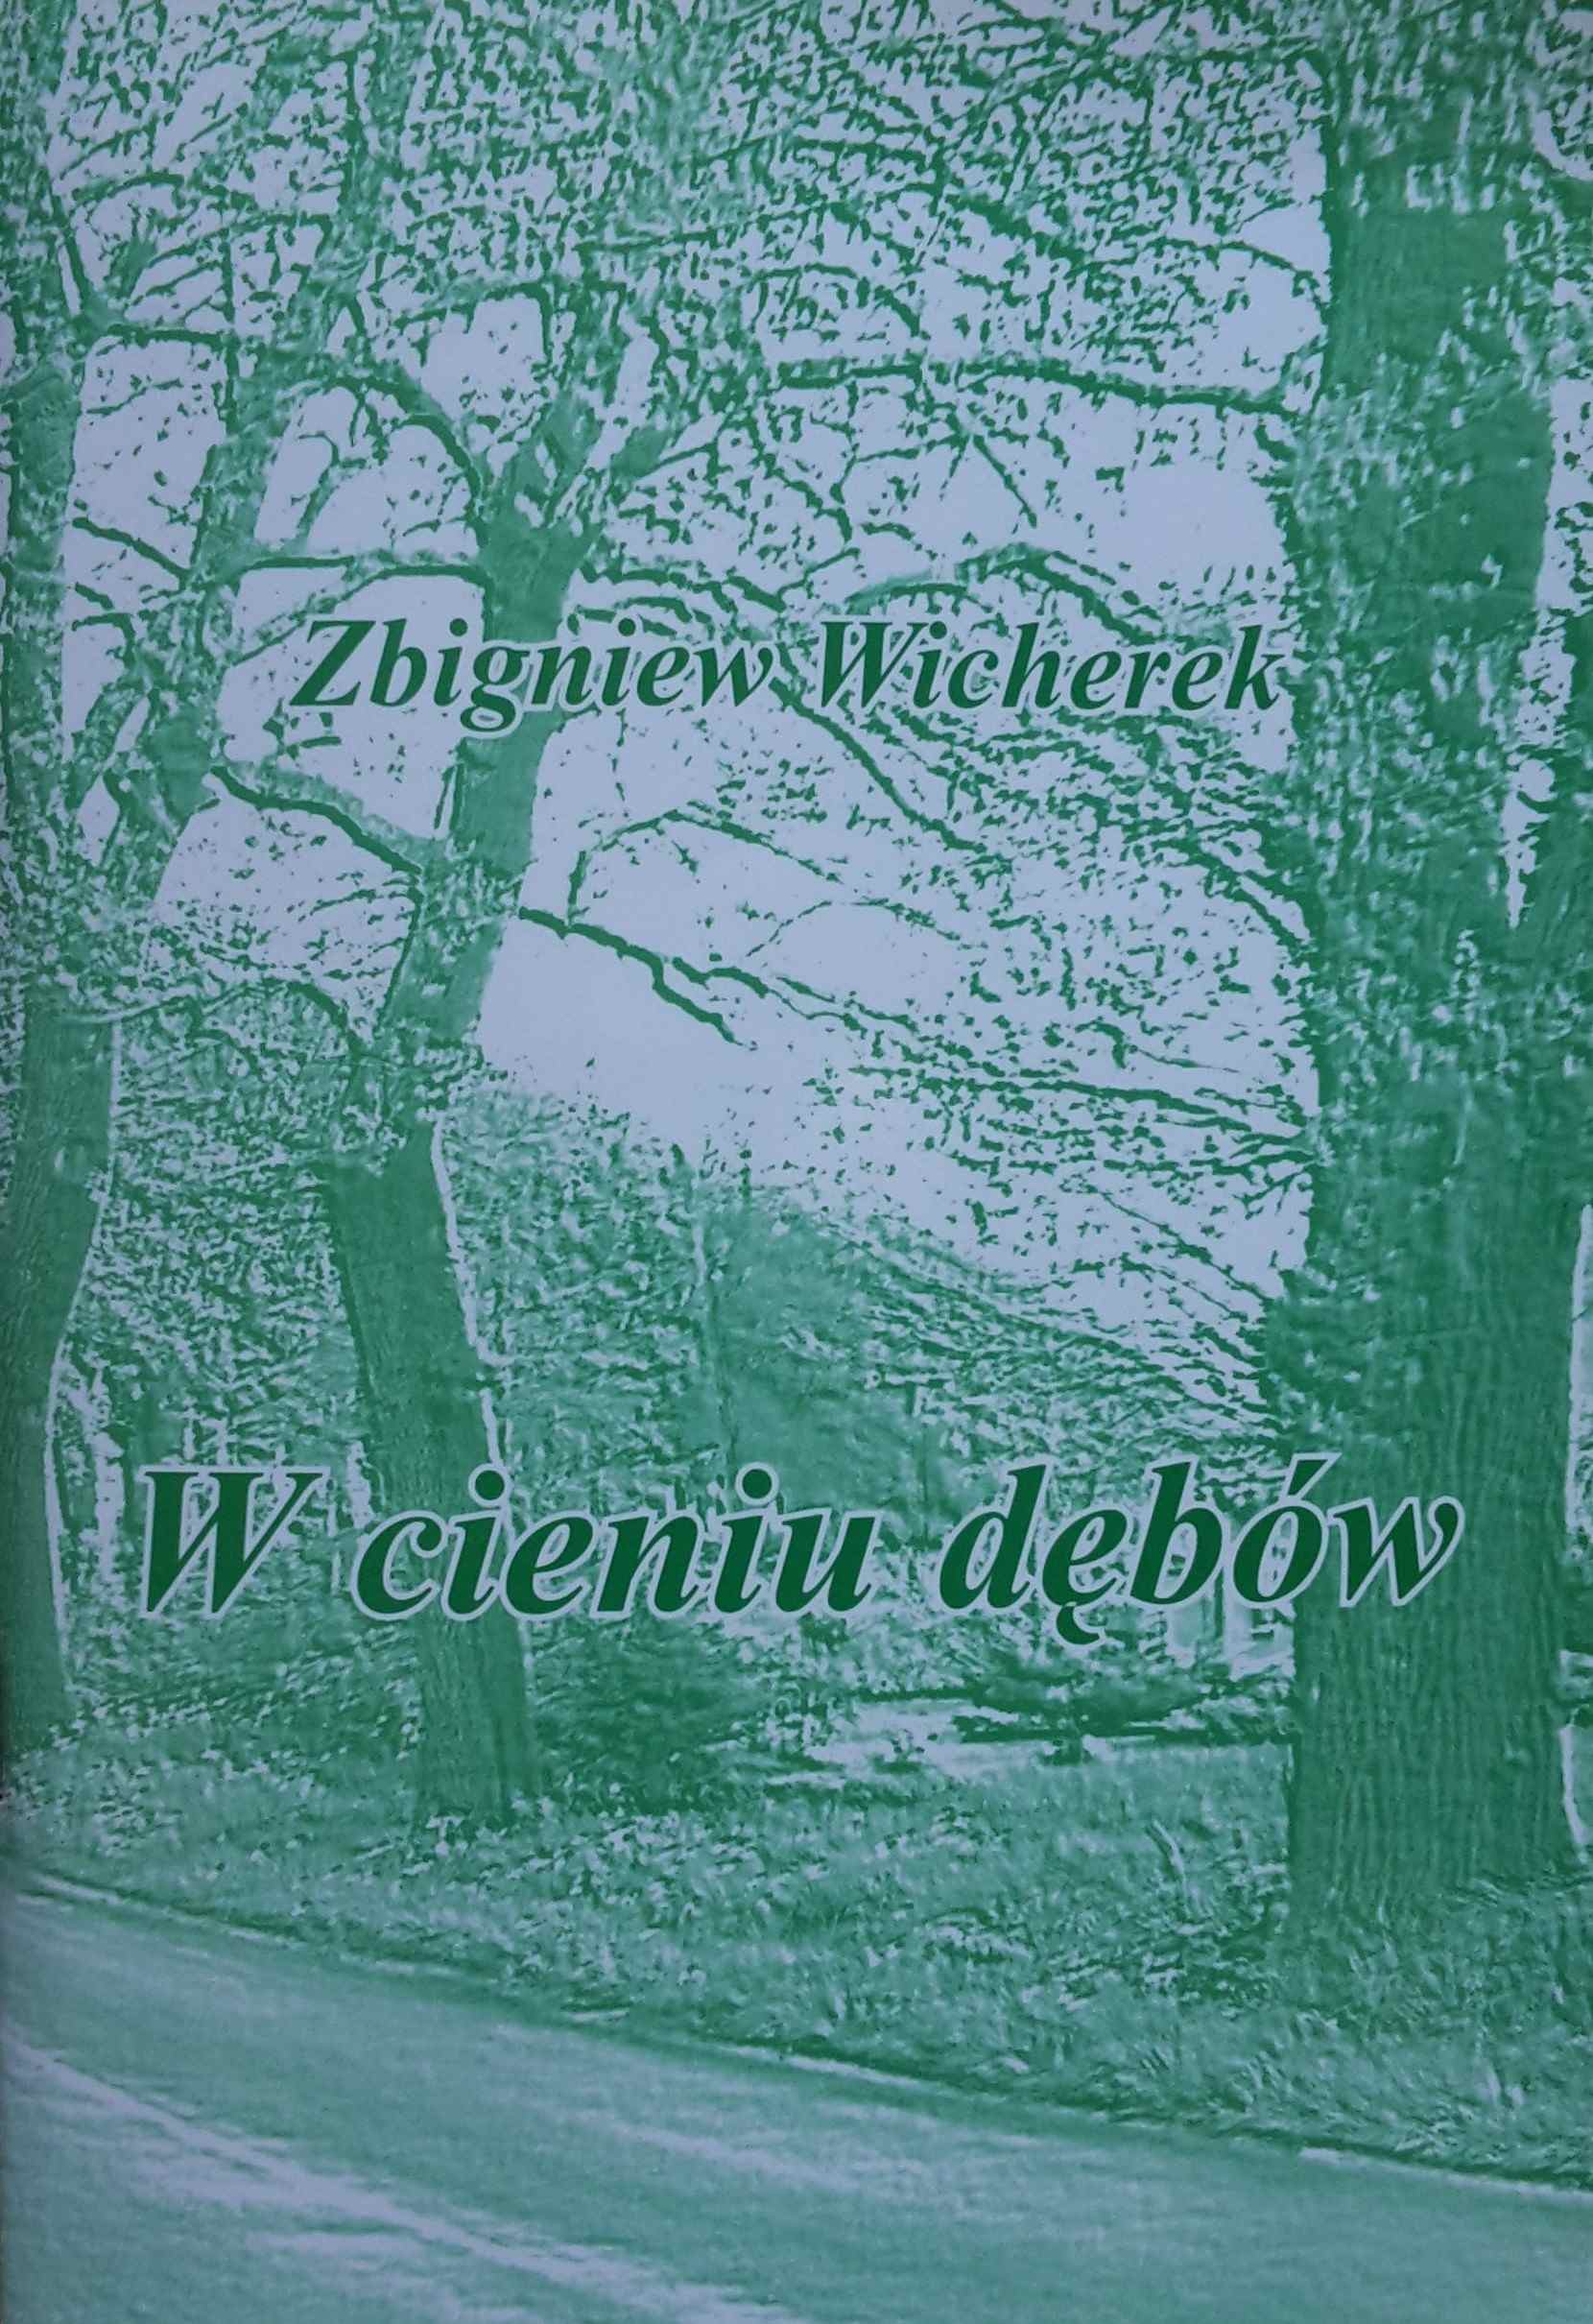 "W cieniu dębów" - Zbigniew Wicherek i Malczewscy